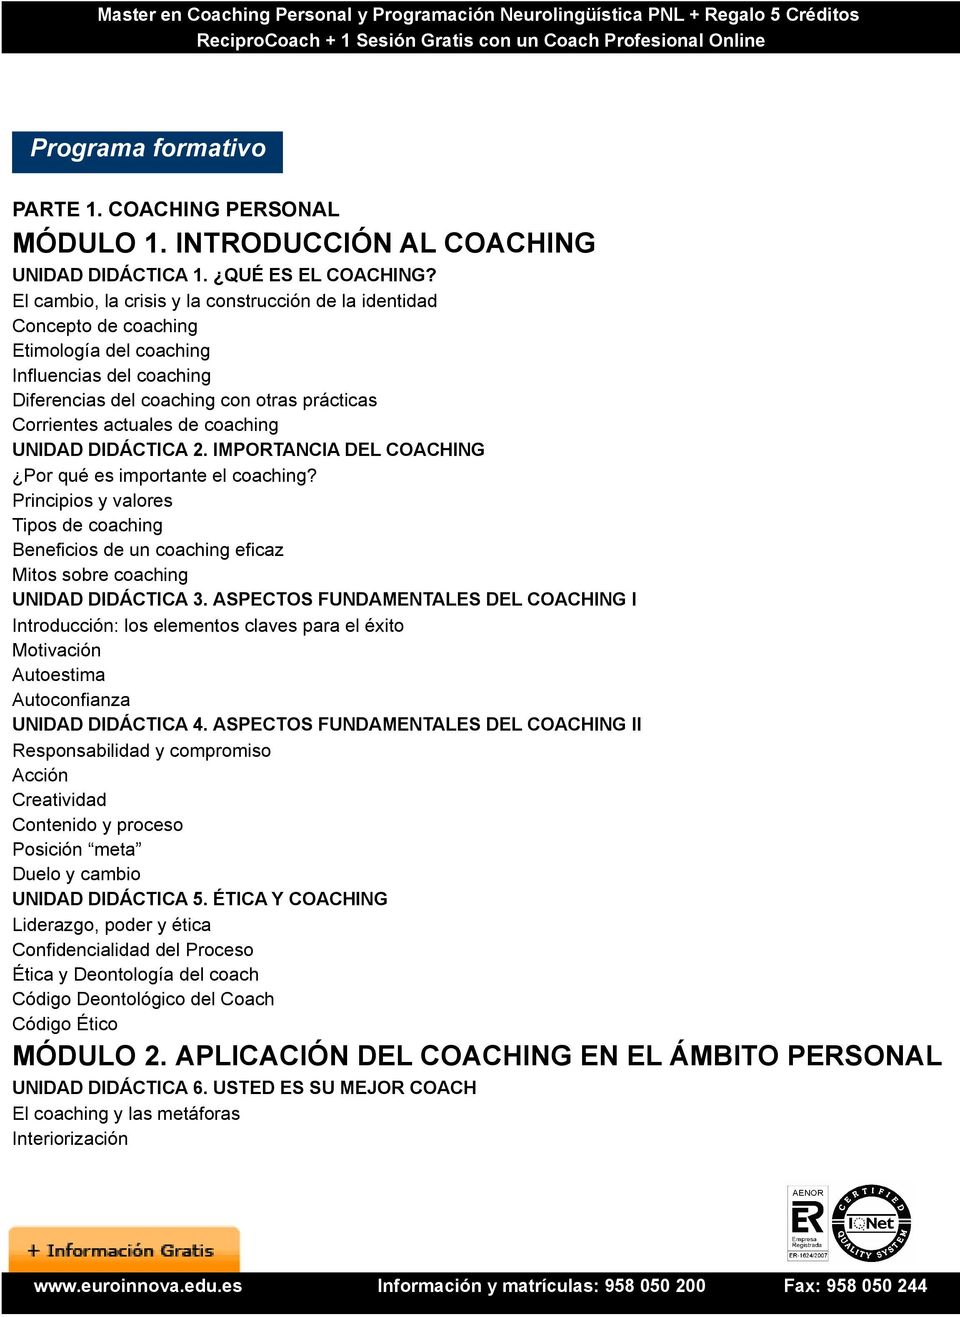 coaching UNIDAD DIDÁCTICA 2. IMPORTANCIA DEL COACHING Por qué es importante el coaching?